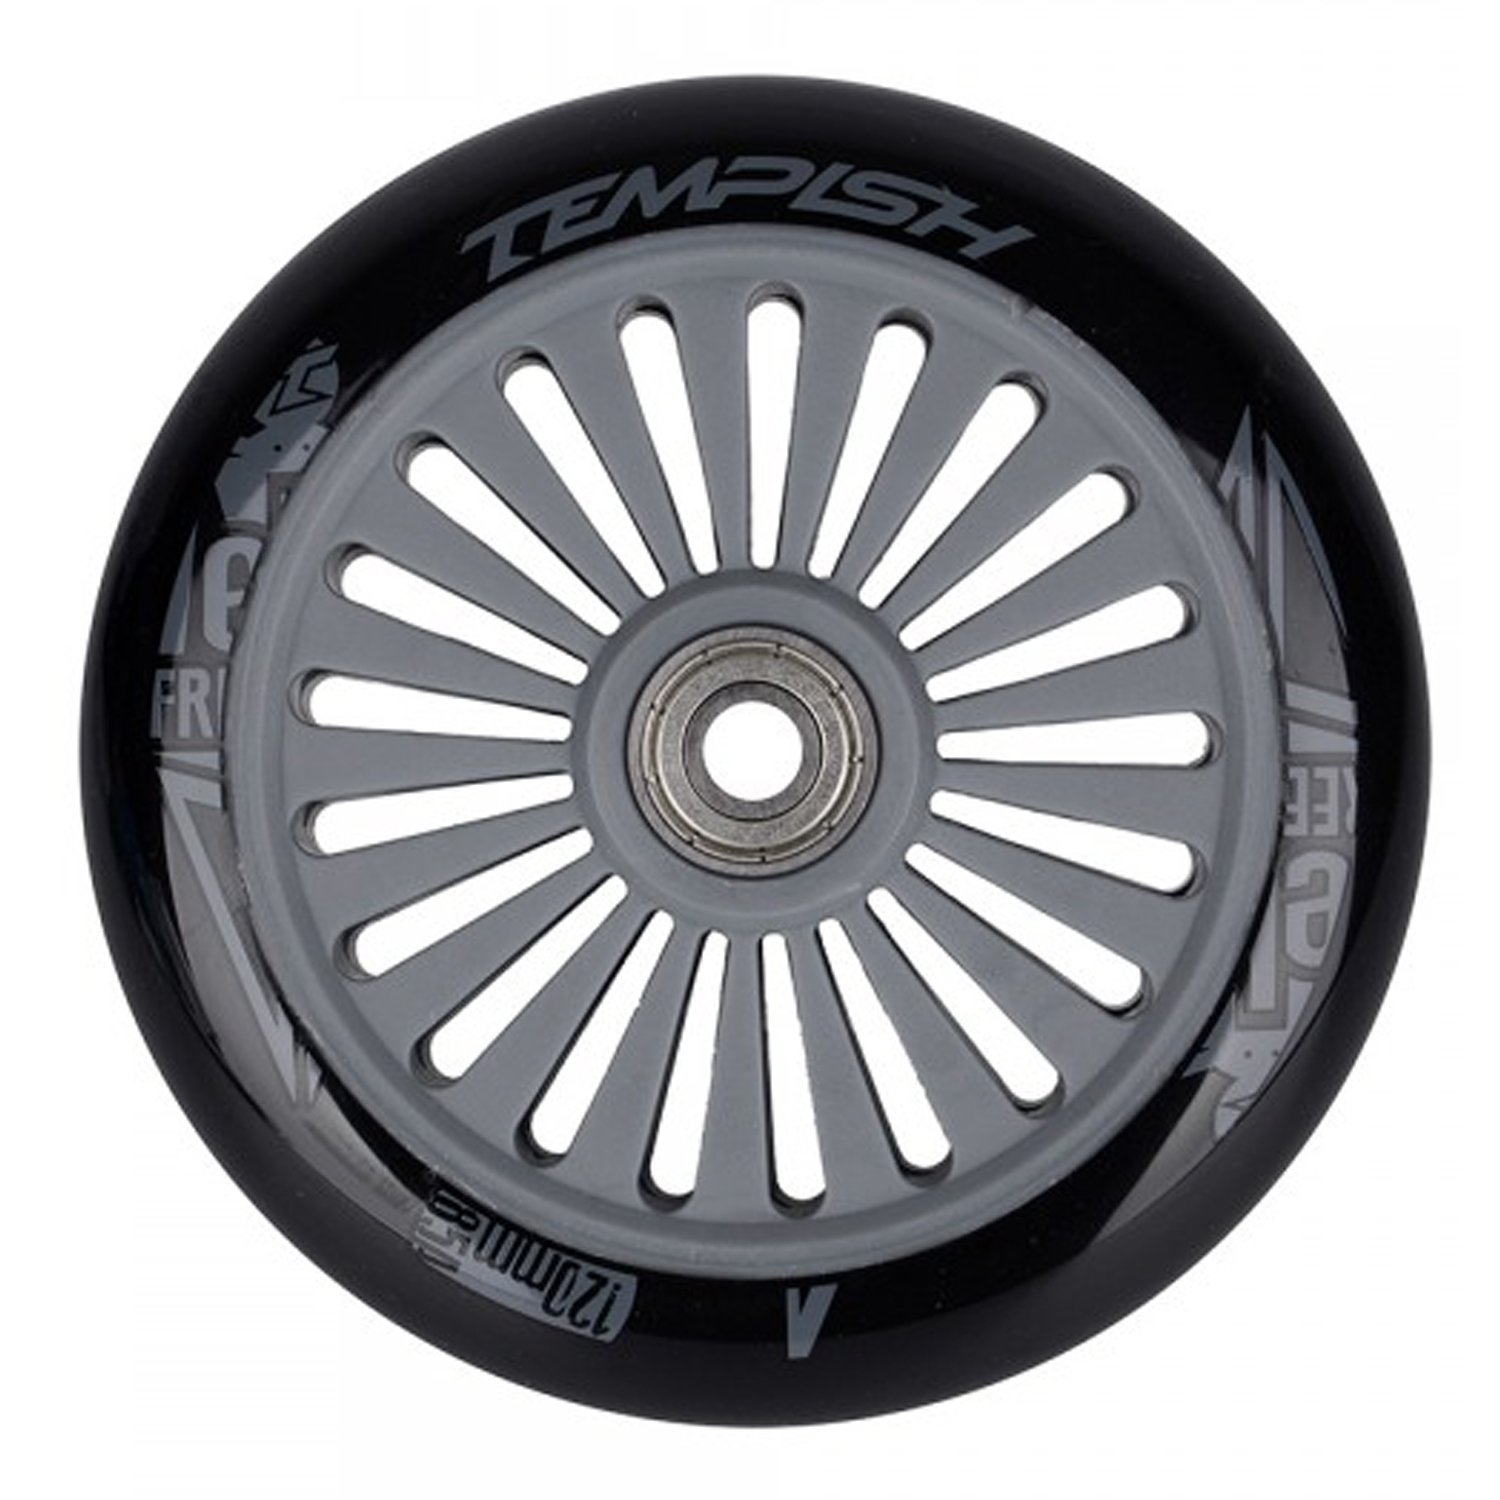 Колесо для самоката Tempish PU, 85A, 120x24 mm, с подшипником, черный, 105100008 колесо для самоката tempish pu 85a 110x24 mm grey б р 105100026